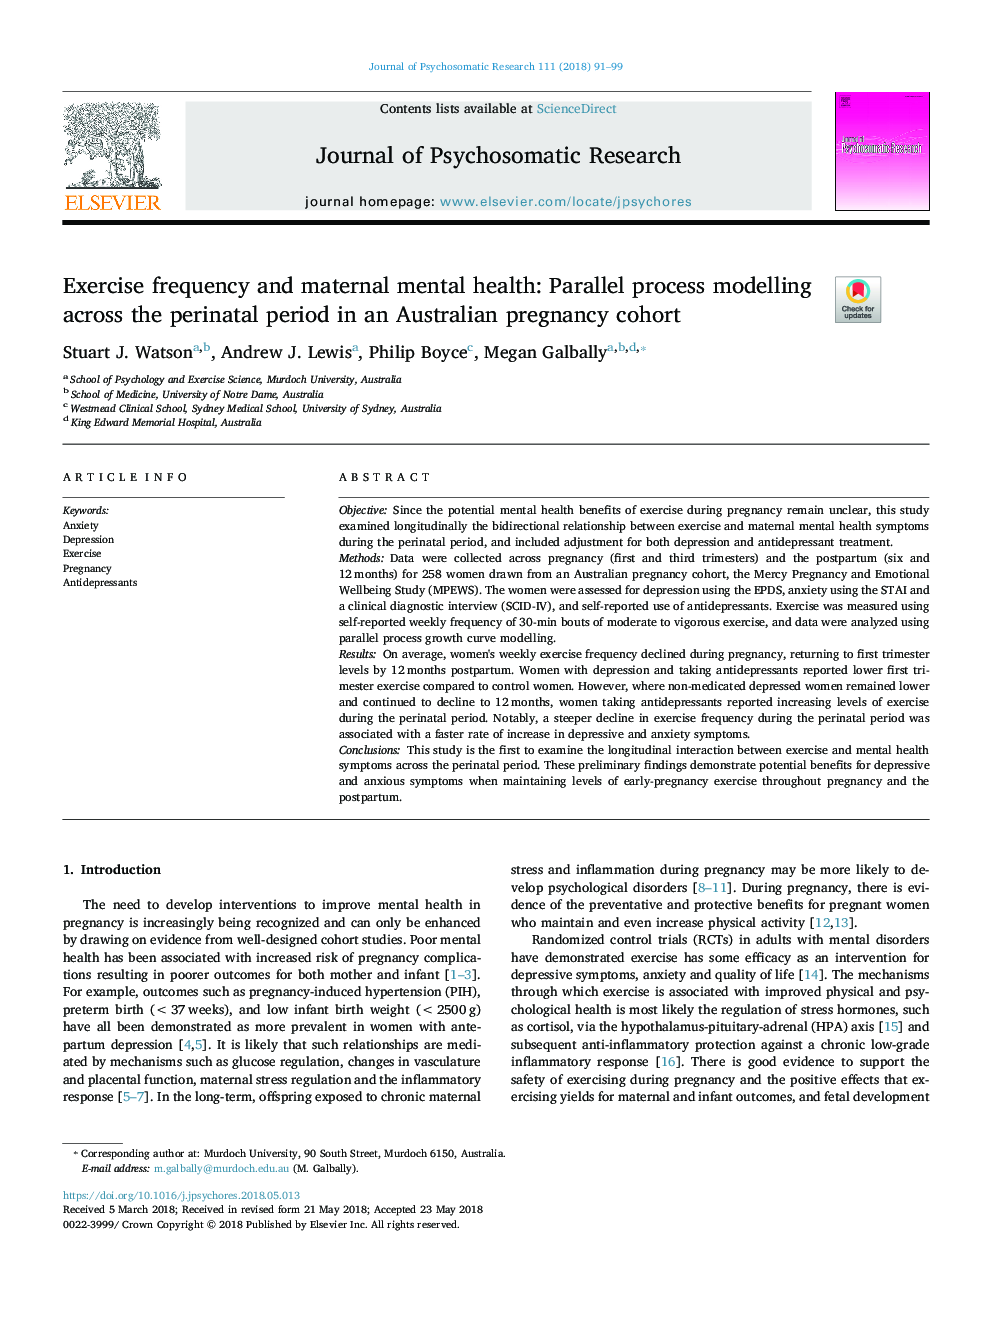 فرکانس ورزش و سلامت روانی مادران: مدلسازی فرایند موازی در دوره پریناتال در یک گروه داوطلب استرالیایی 